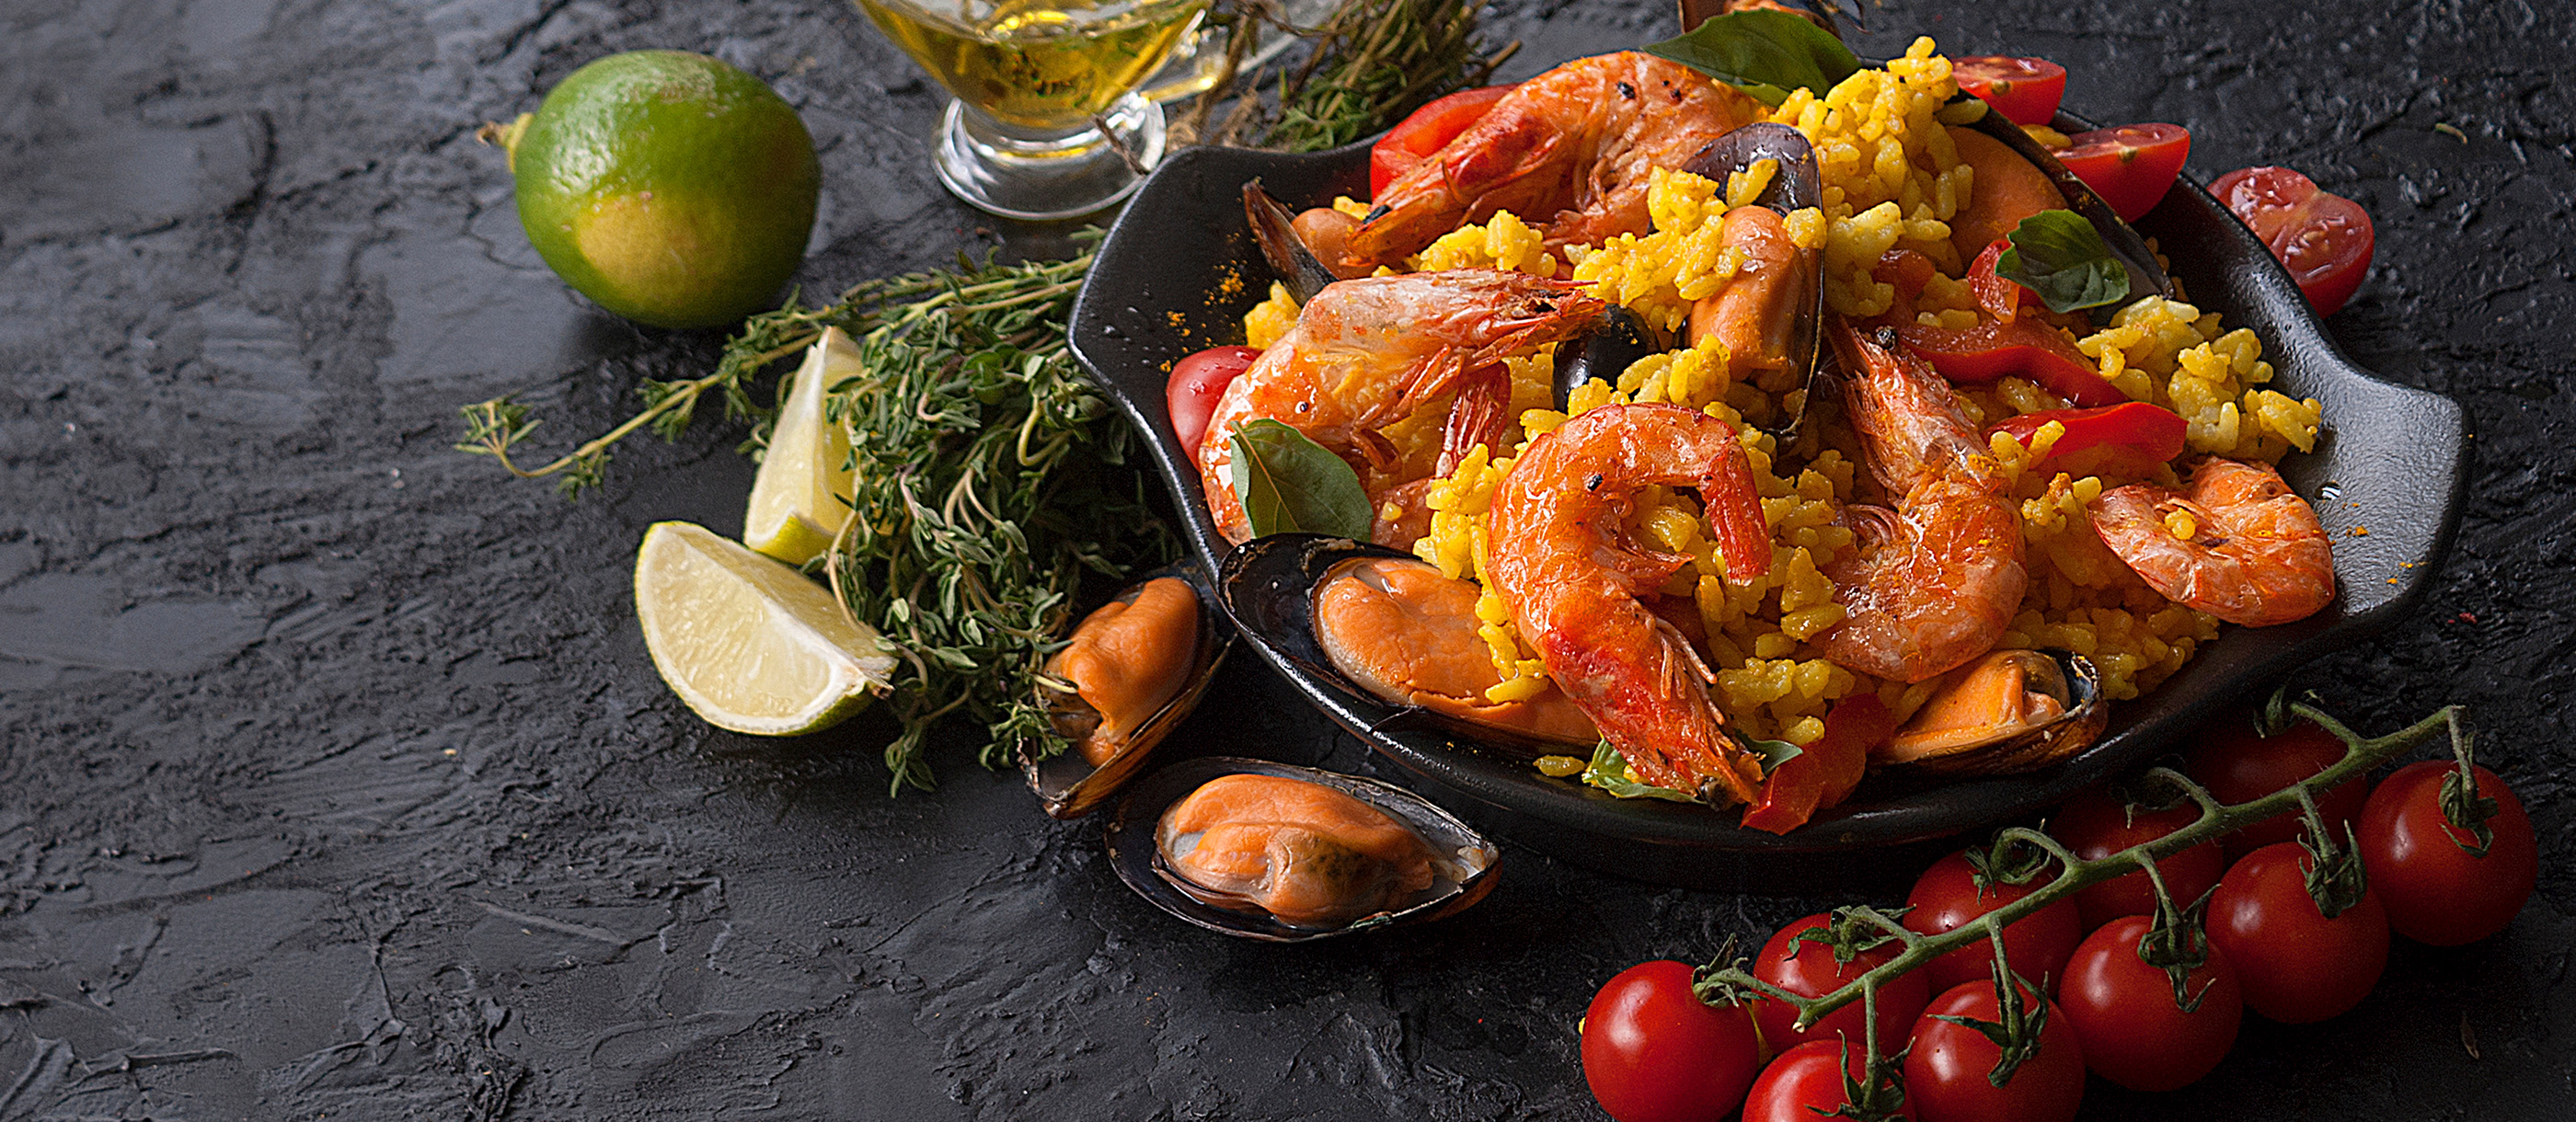 100 Most Popular Spanish Foods - TasteAtlas